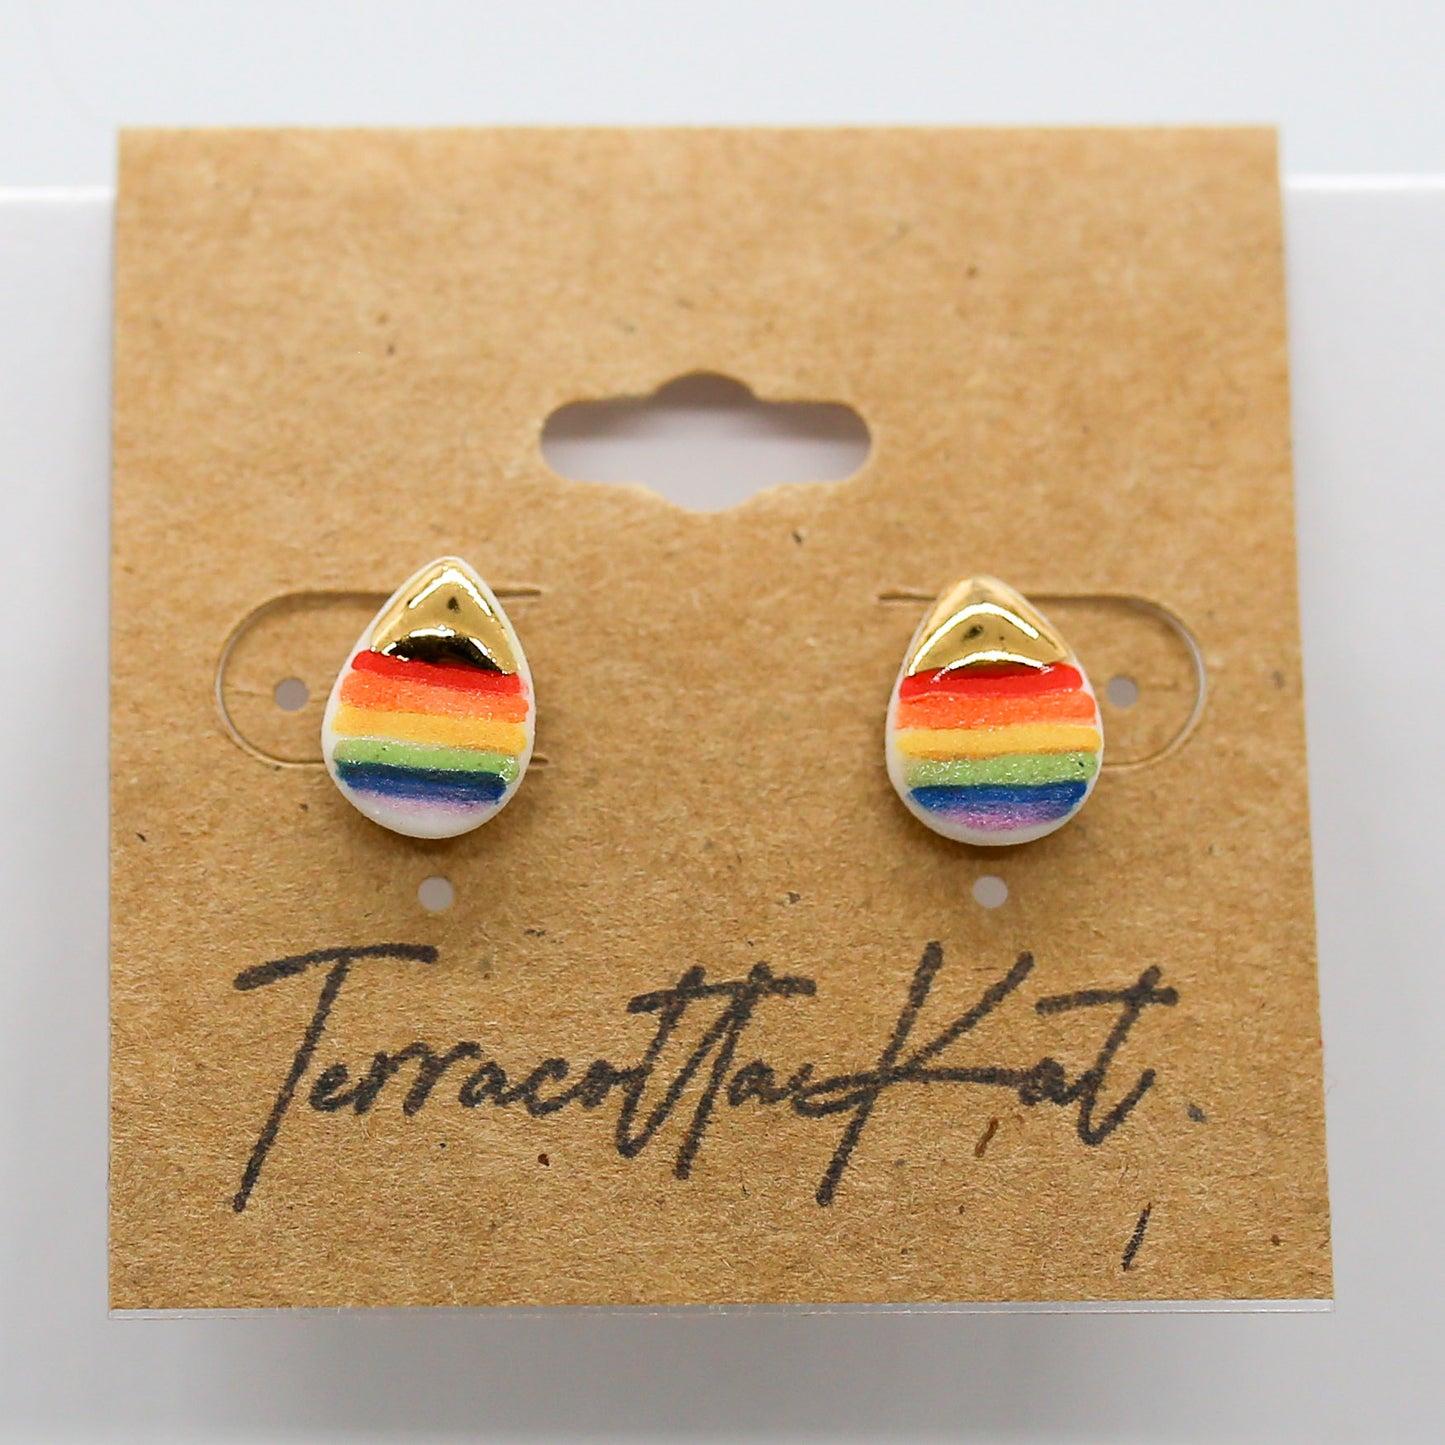 Small Teardrop Earrings in rainbow